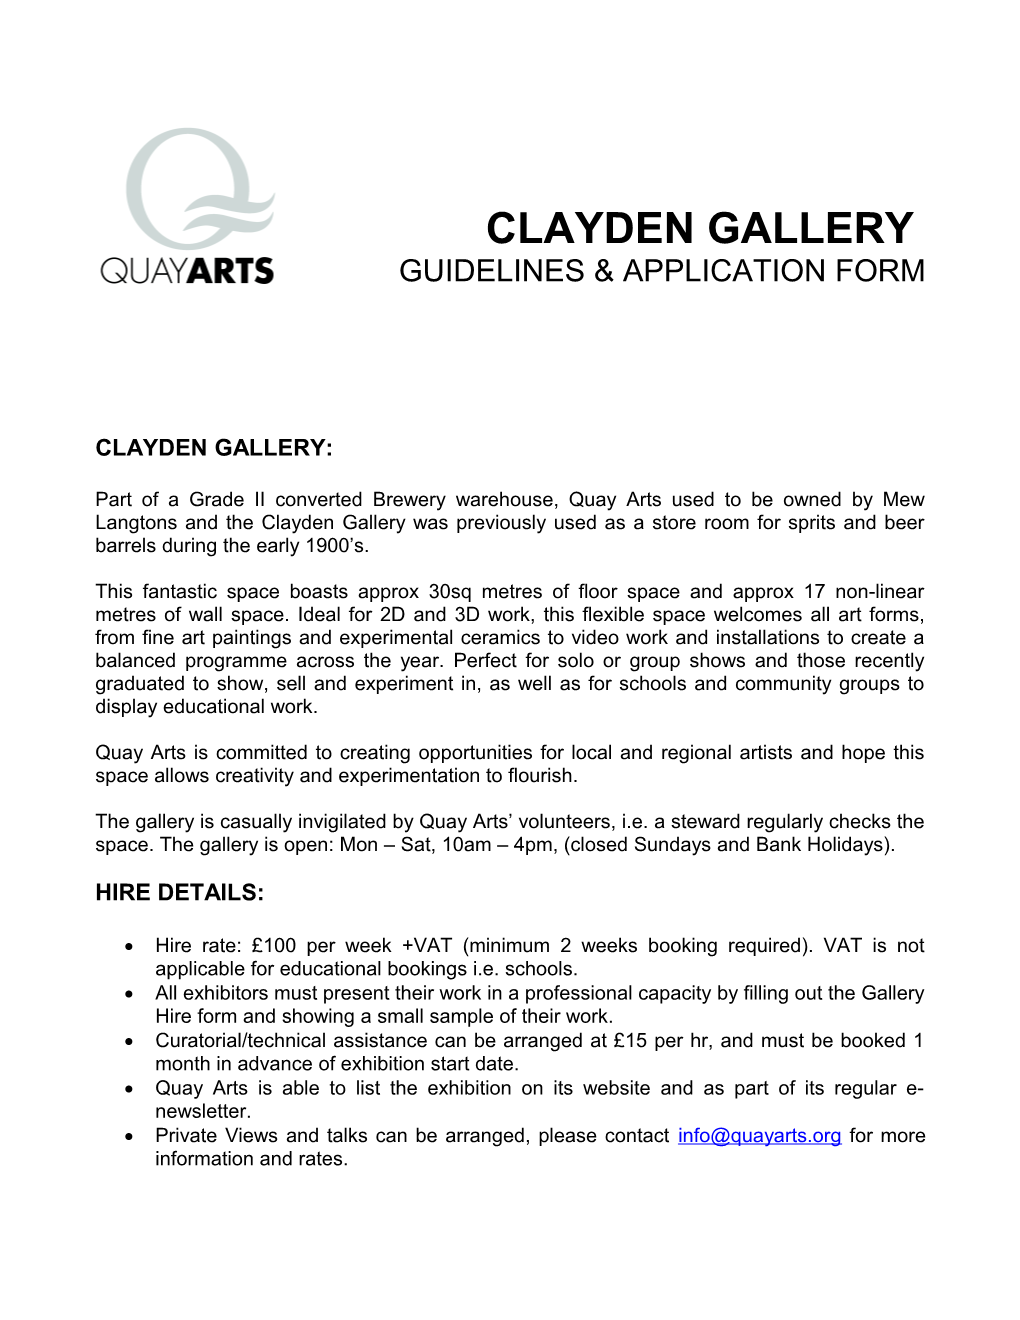 Clayden Gallery